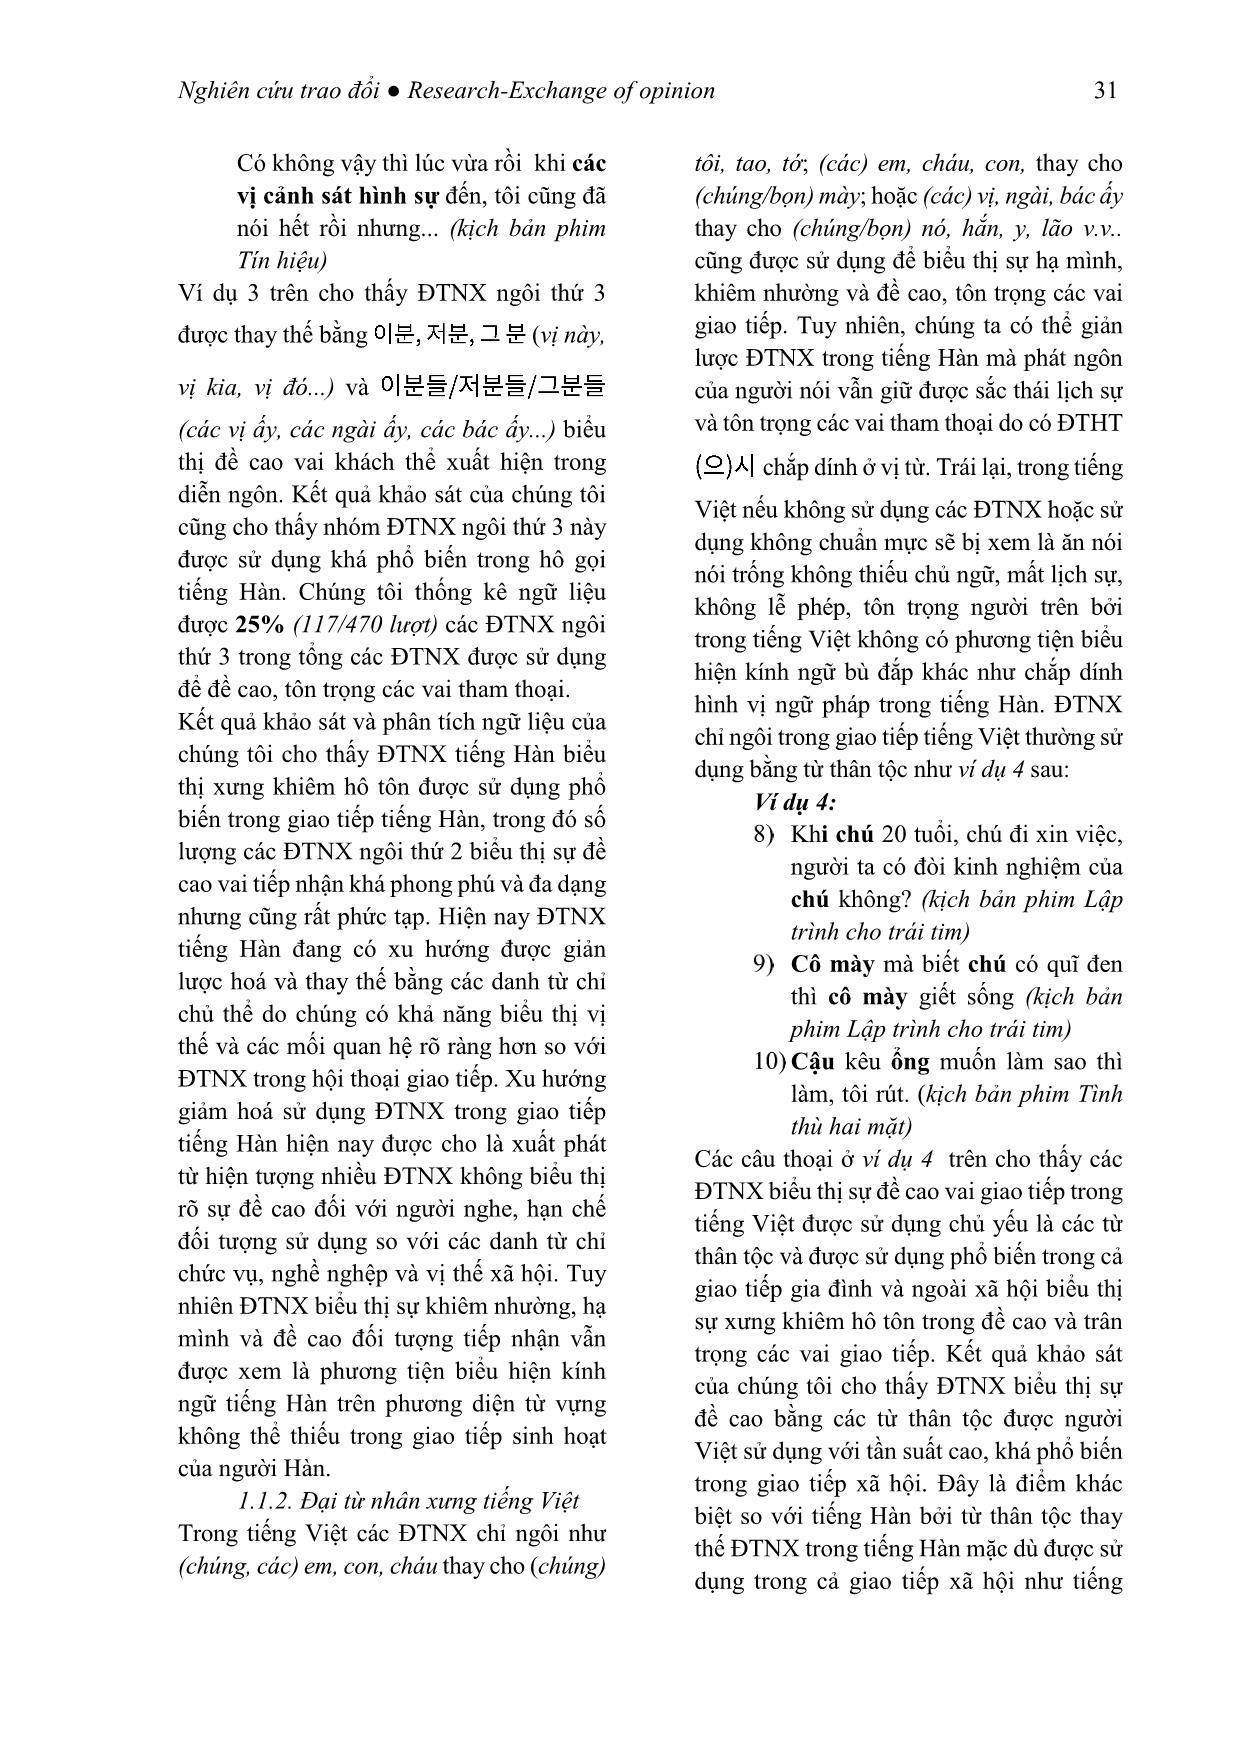 Kính ngữ tiếng Hàn qua phương thức thay thế từ vựng (Xét trong mối tương quan với tiếng Việt) trang 5